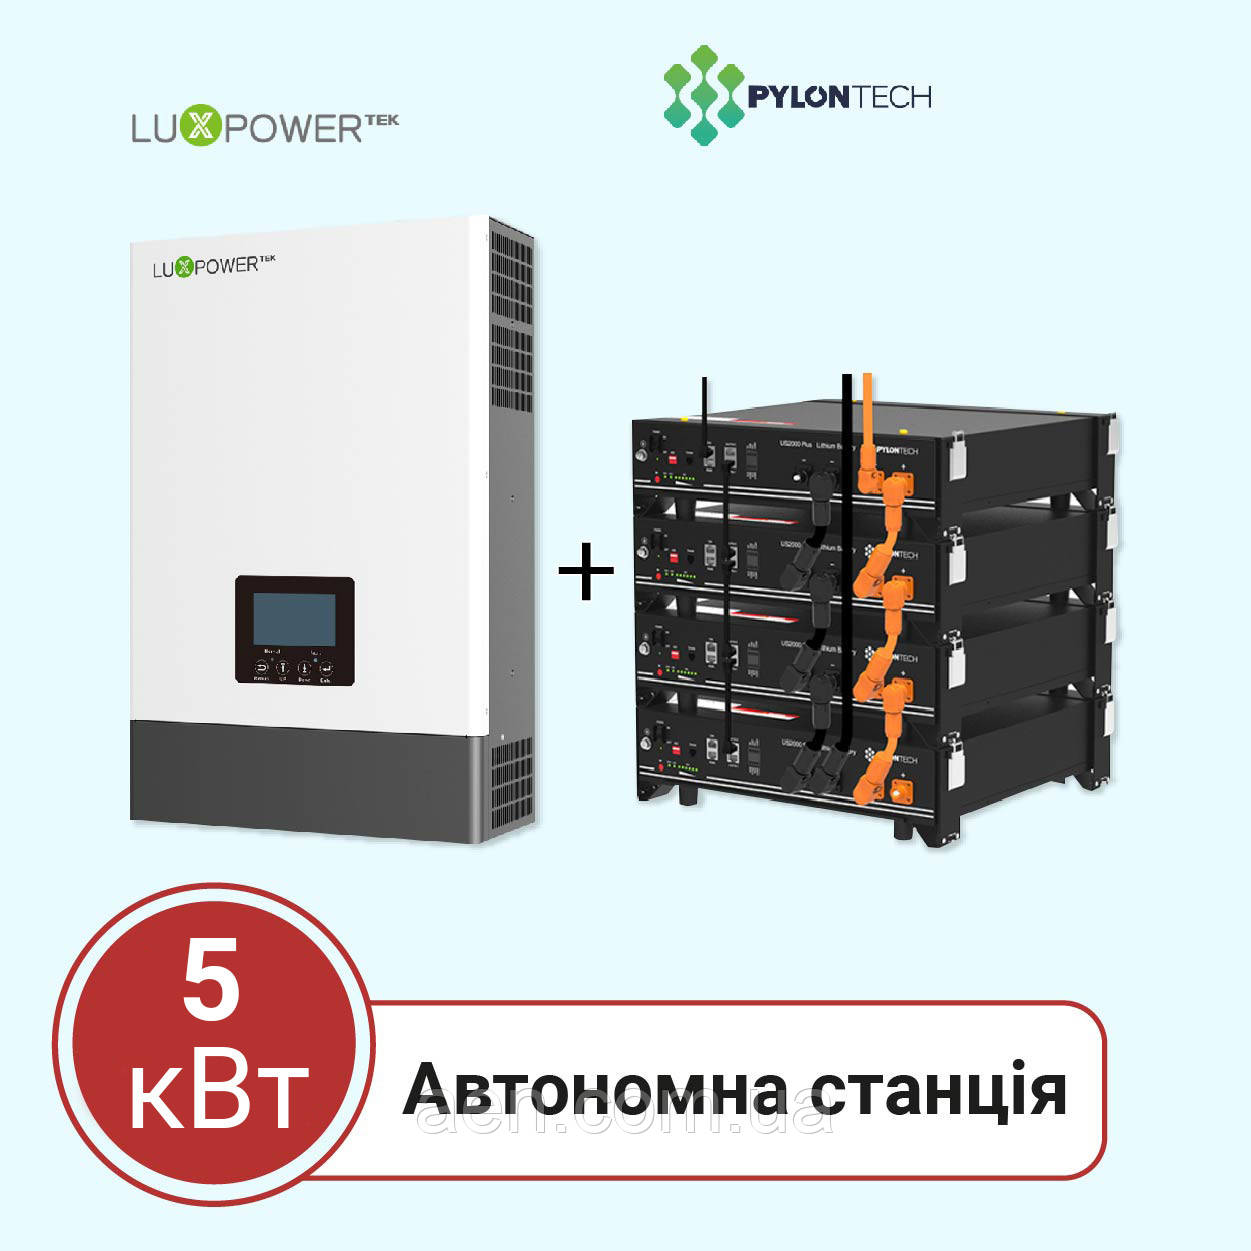 Автономна станція 5 кВт на LuxPower + Pylontech